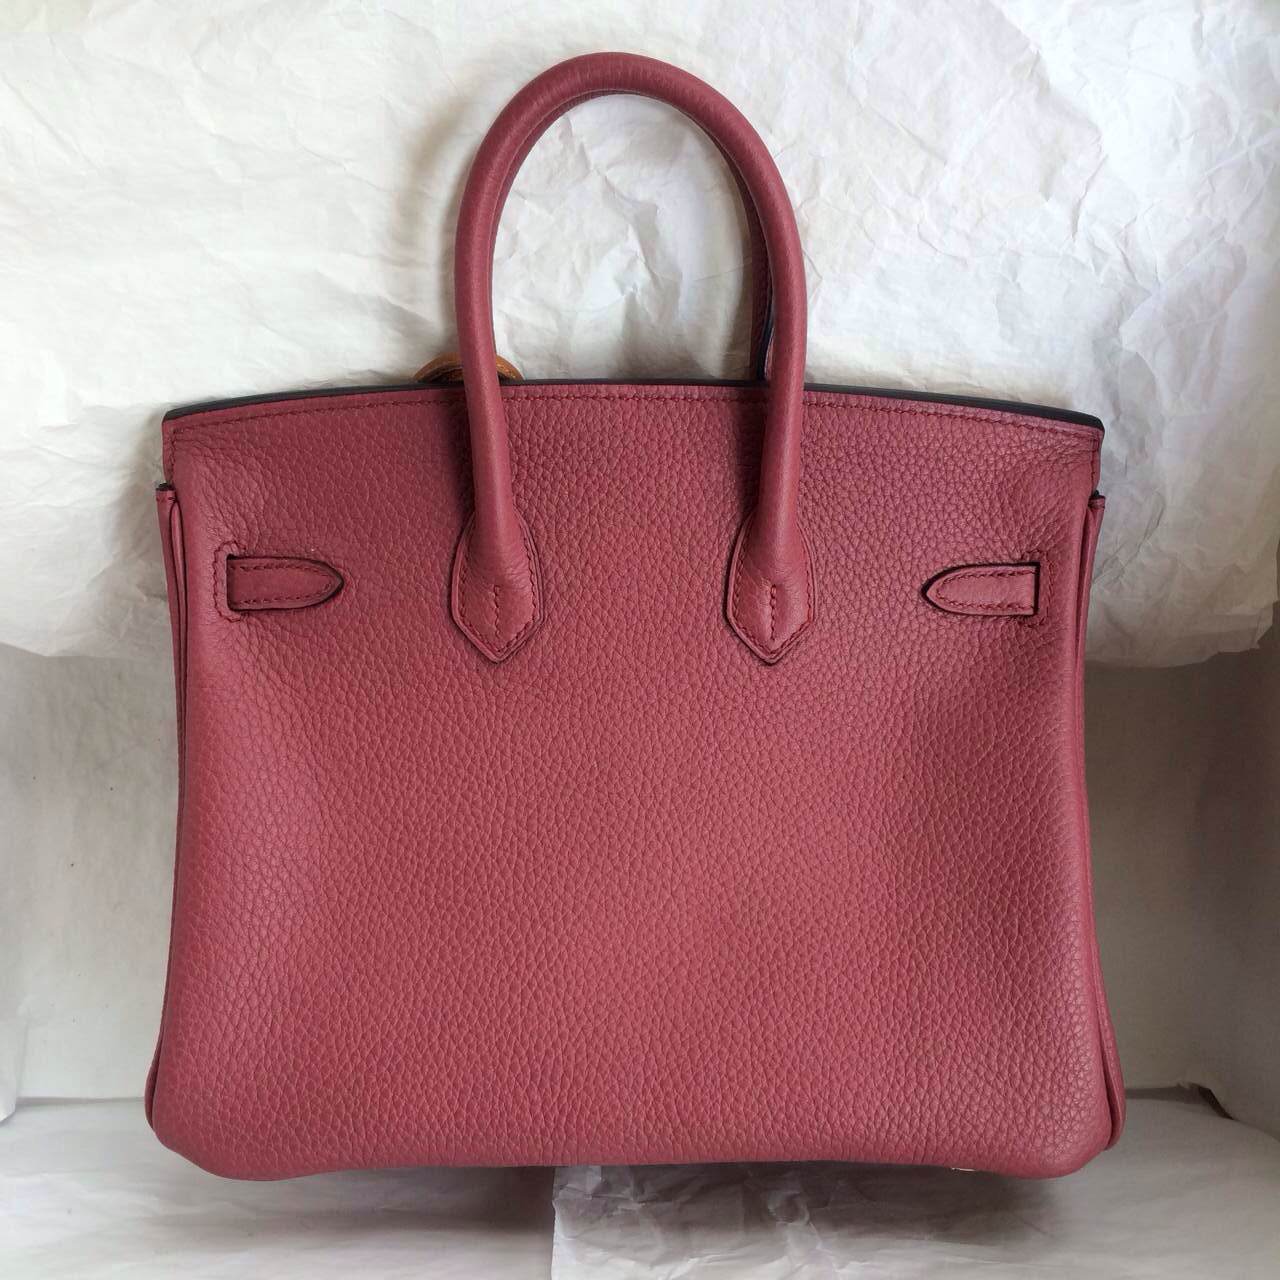 New Hermes Birkin Bag 35cm Bois De Rose France Togo Leather Palladium-hardware